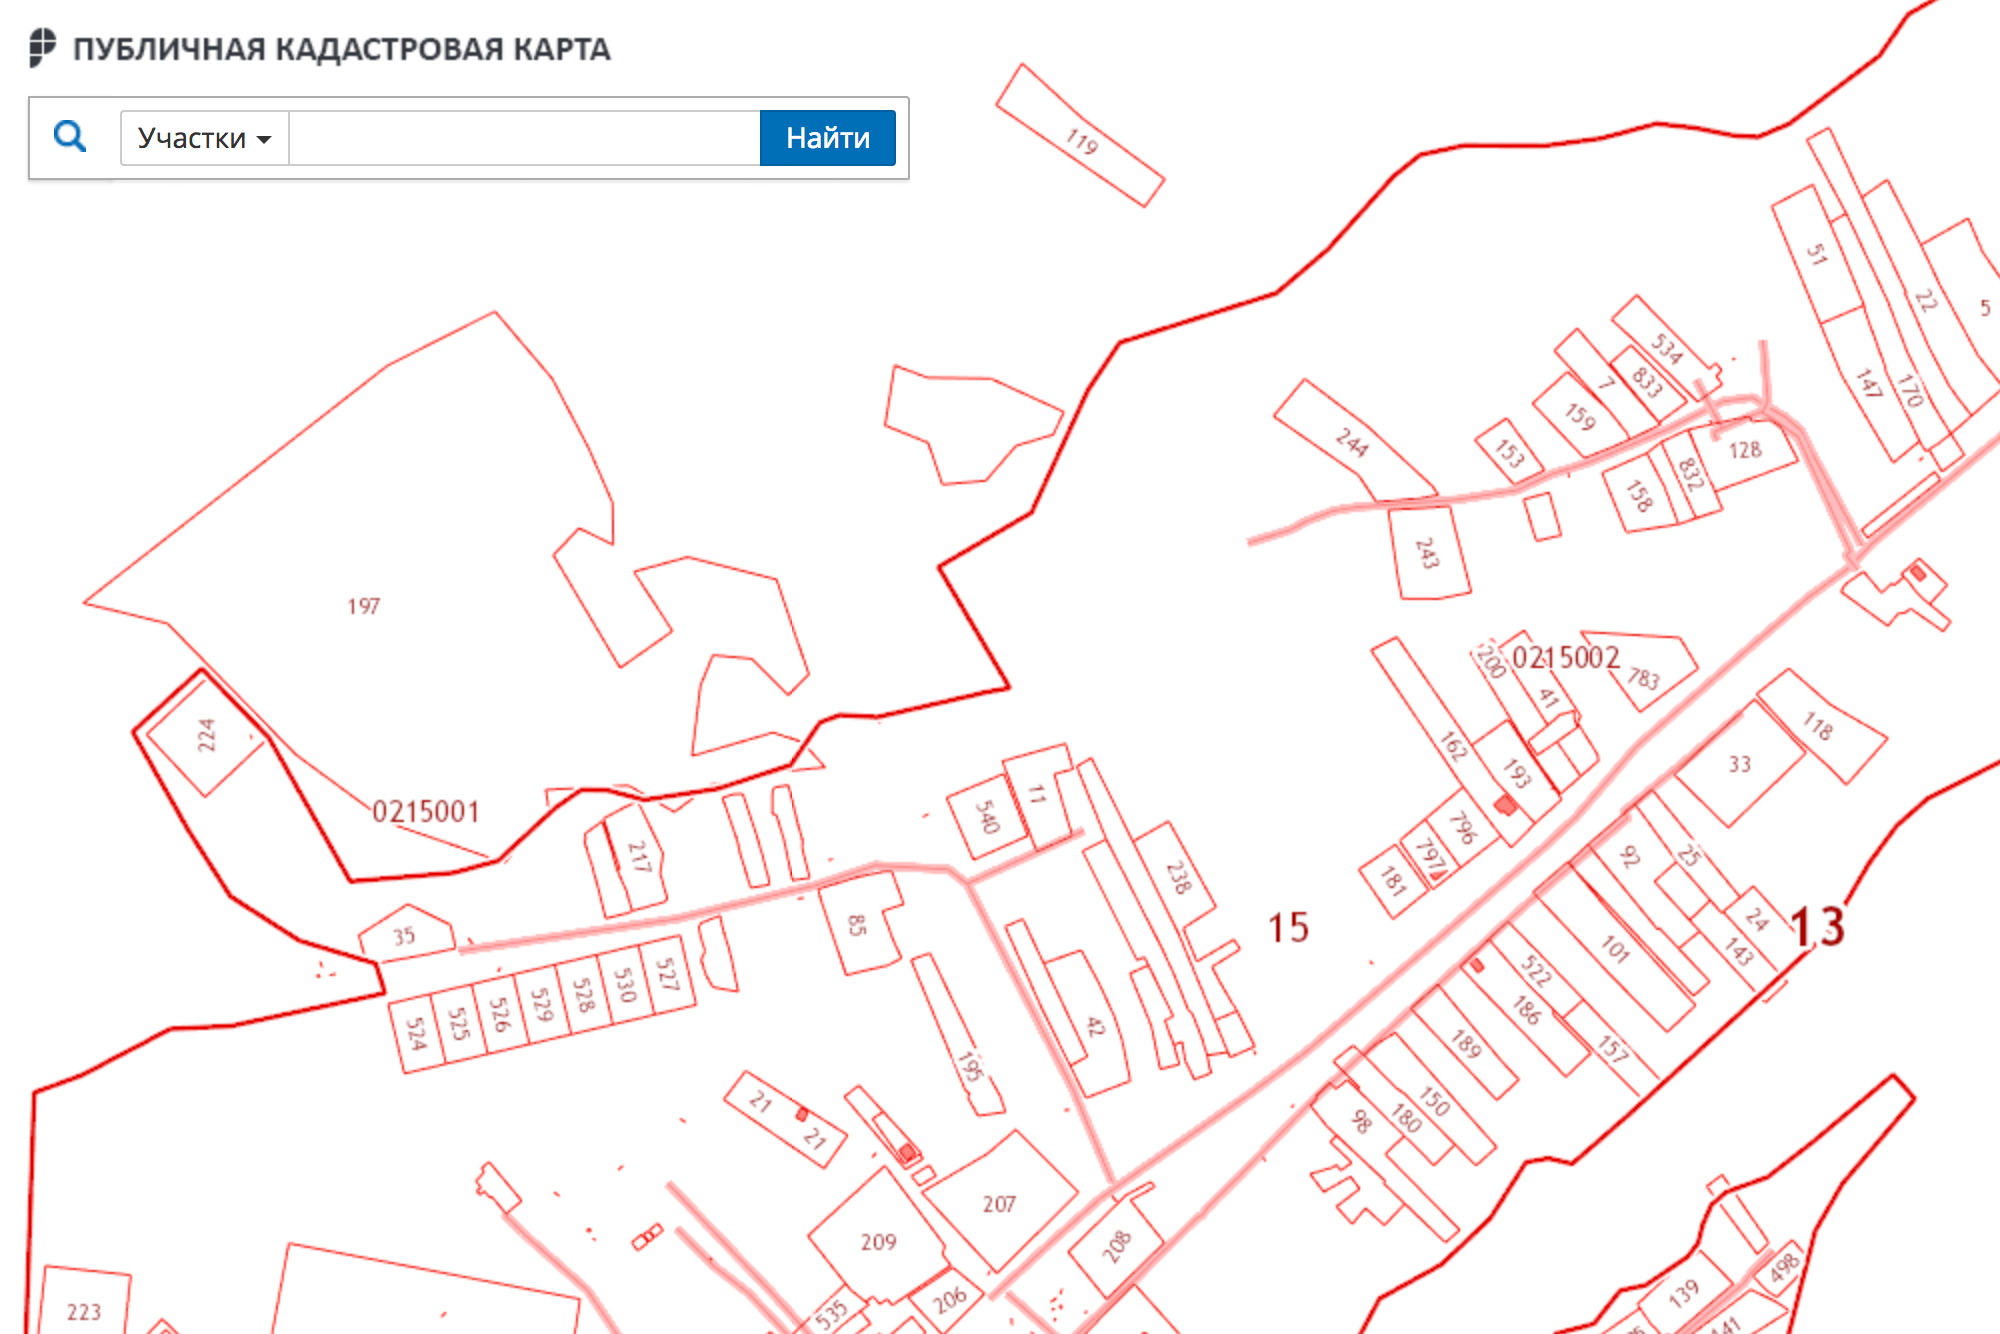 Публичная кадастровая карта. Оформленные земельные участки обведены красным